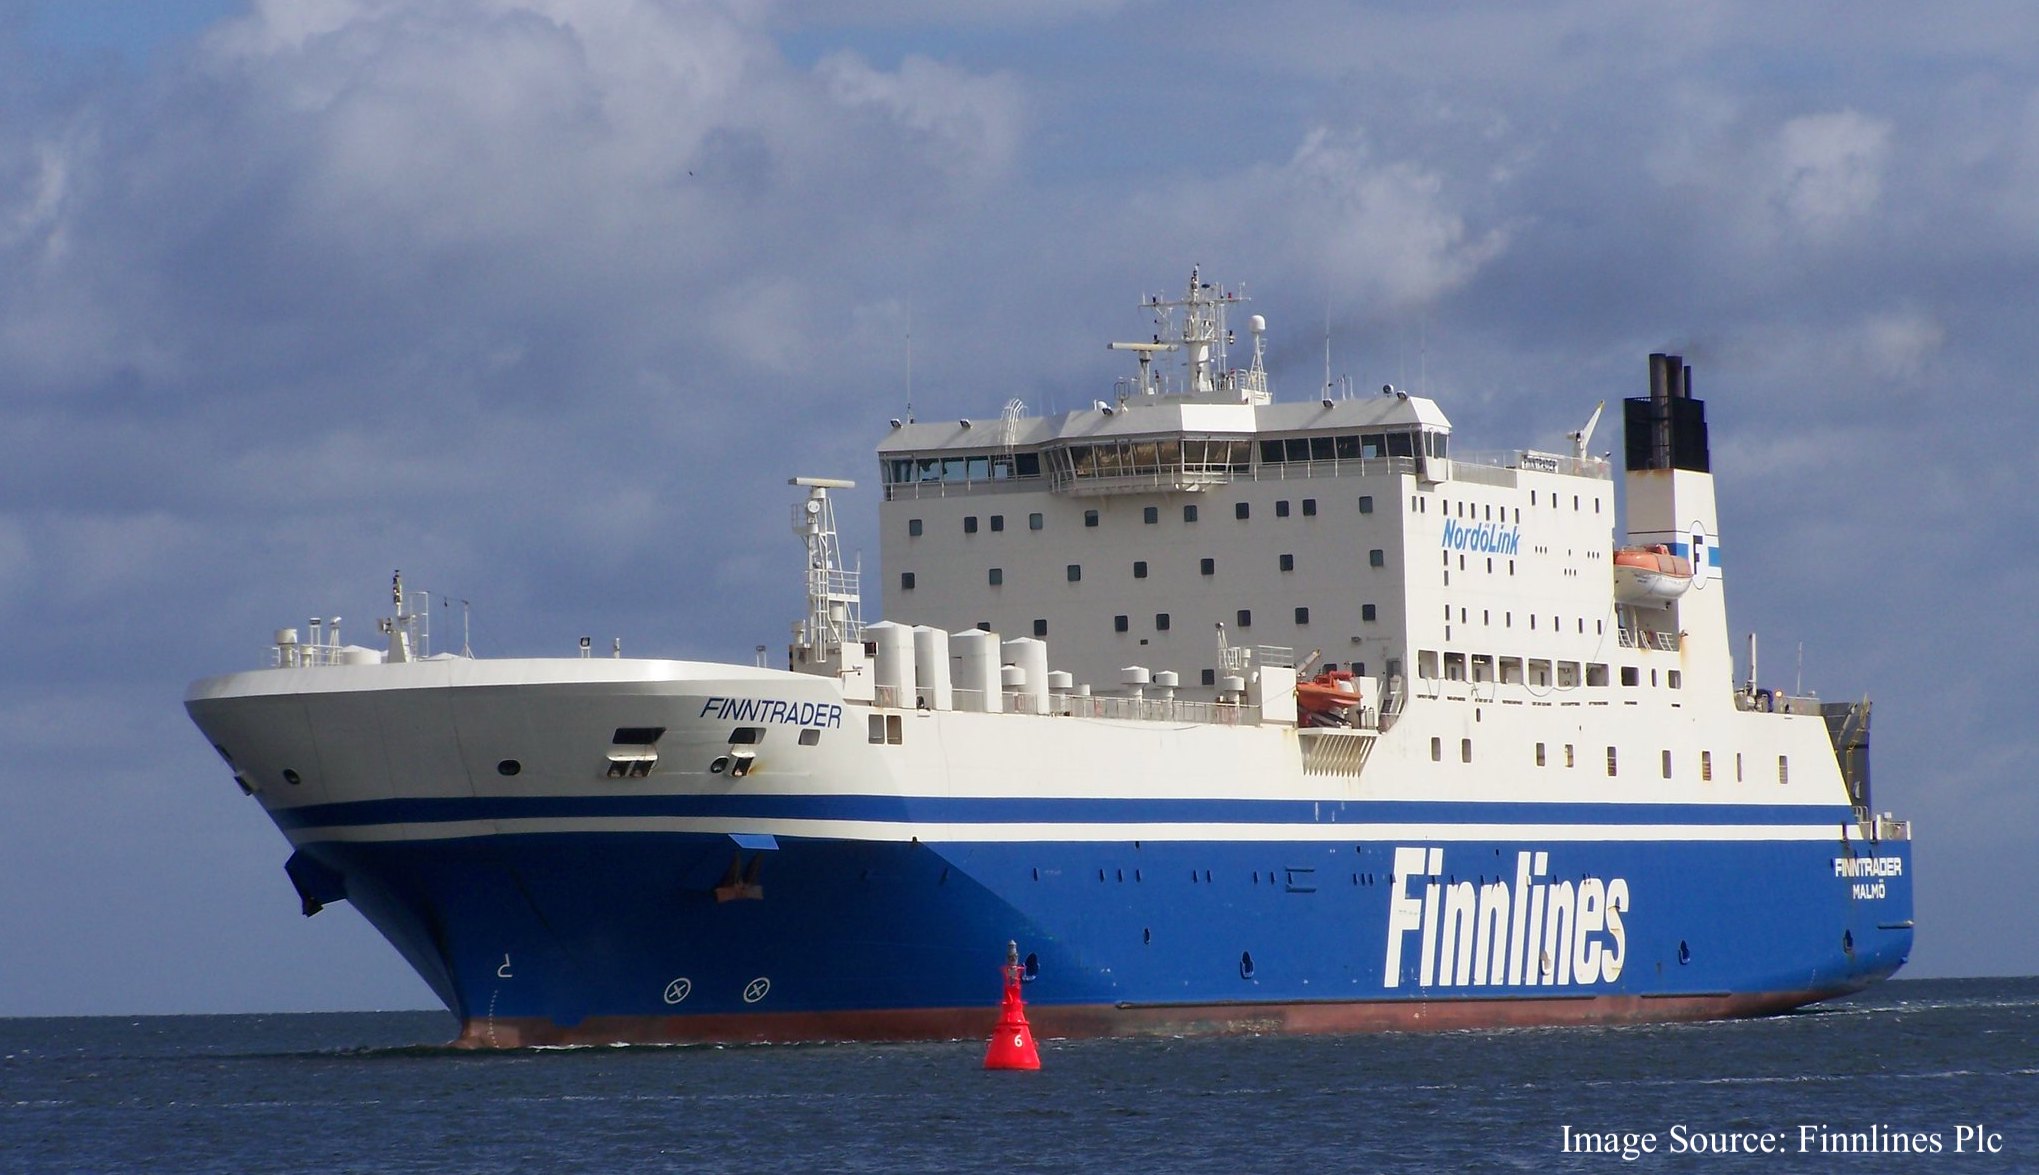 Zdjęcie statku Finnlines - Finntrader